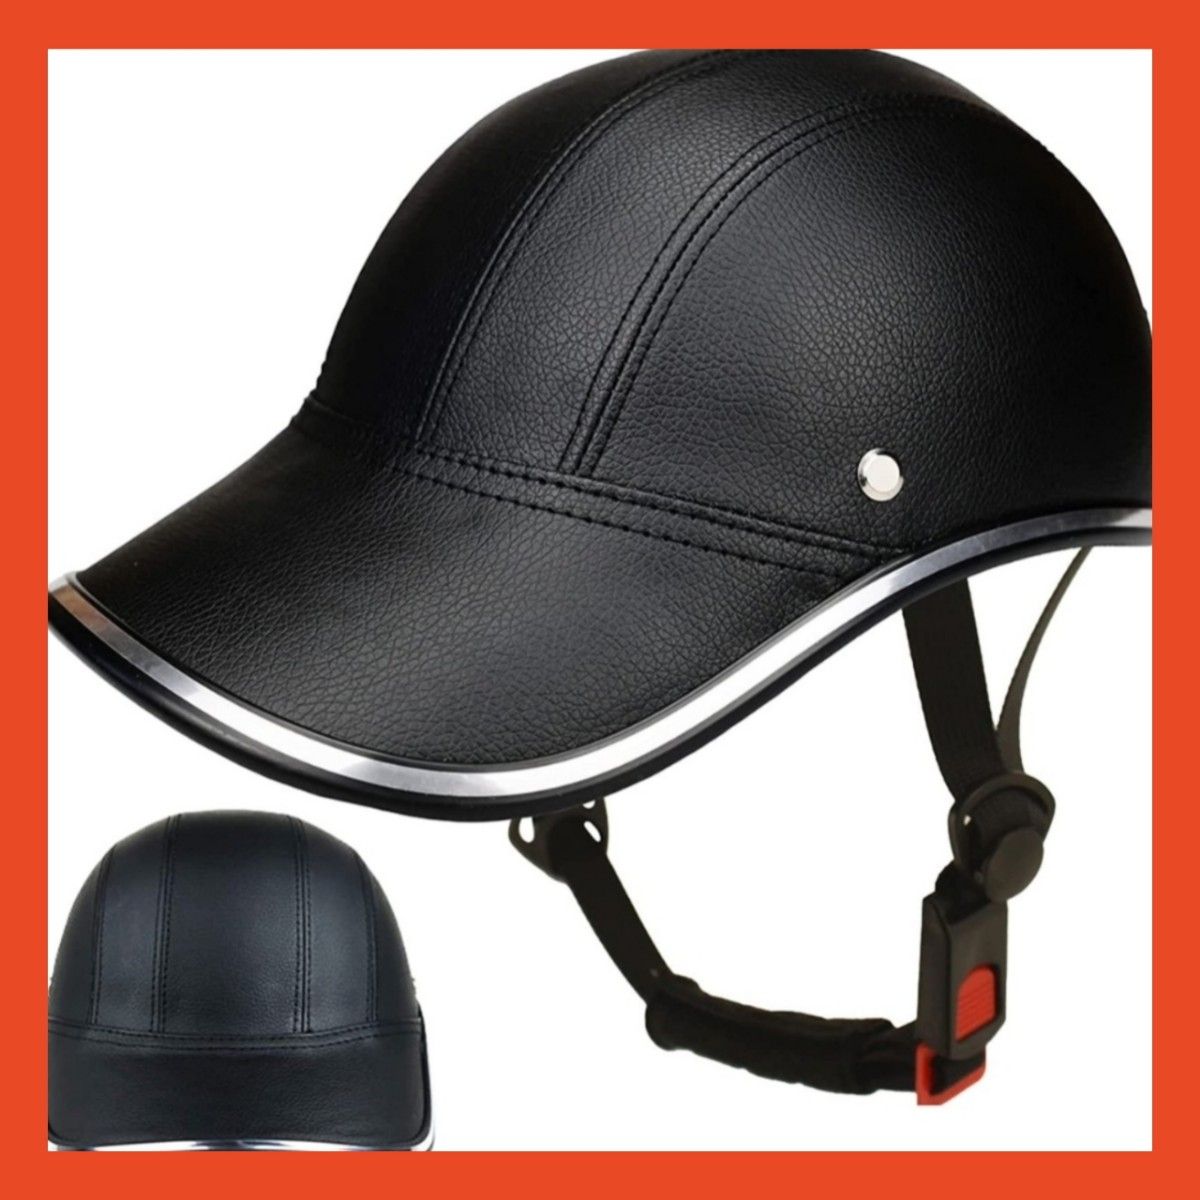 【大人気】ヘルメット 自転車 大人用 帽子型 54-62cm 黒 革 レザー ブラック キャップ 男女兼用